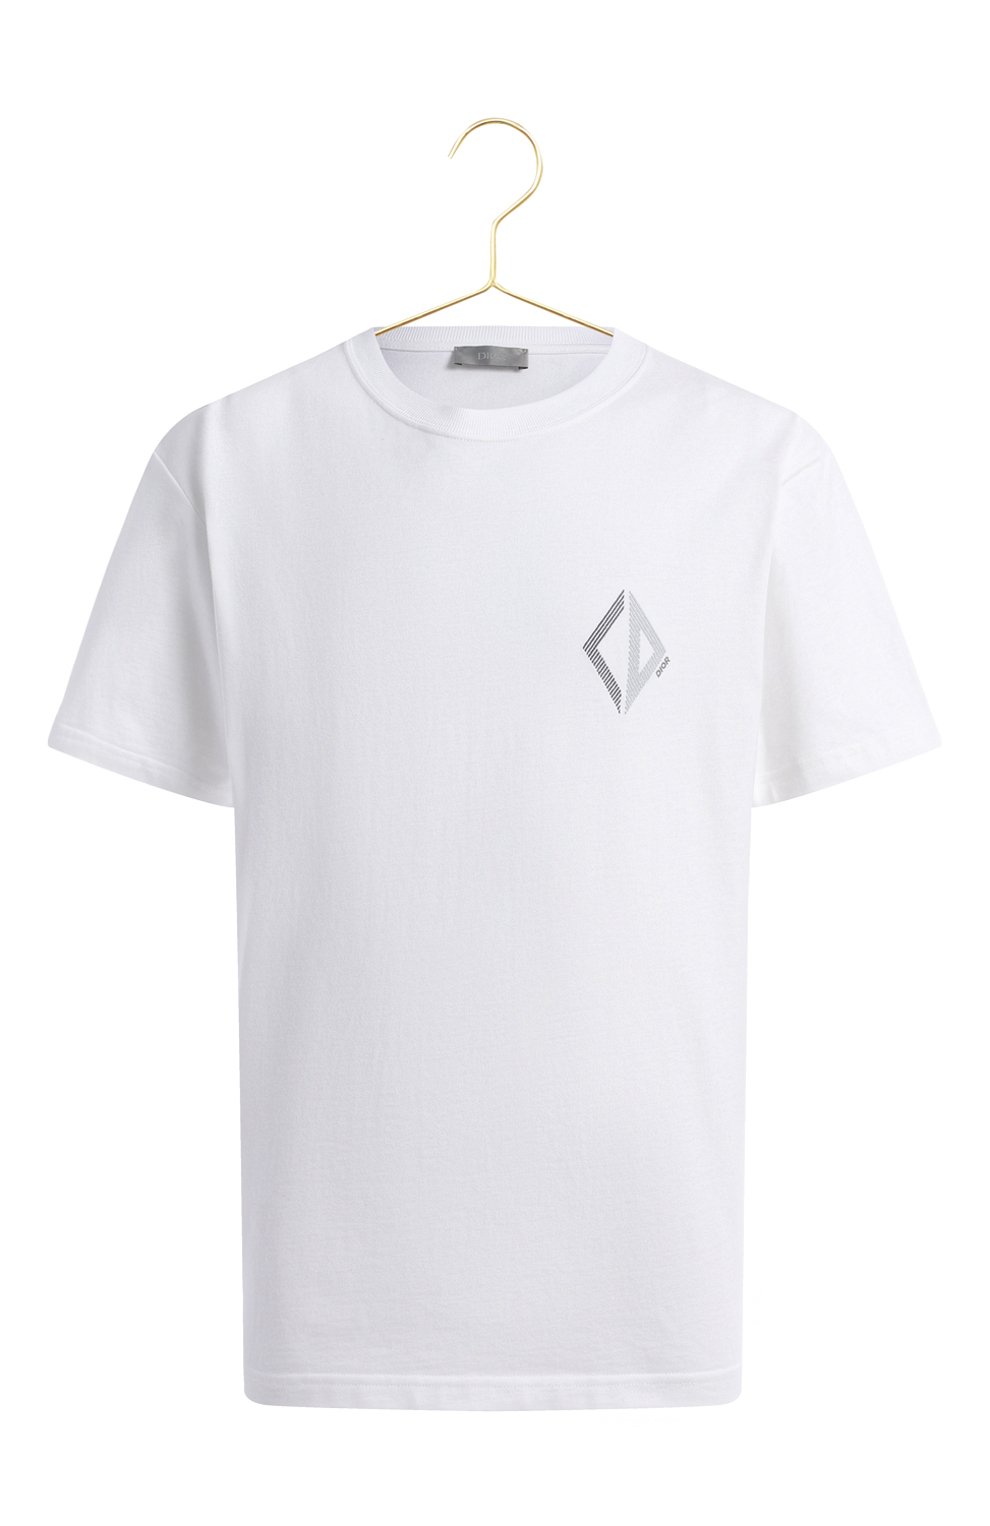 Хлопковая футболка | Dior | Белый - 1